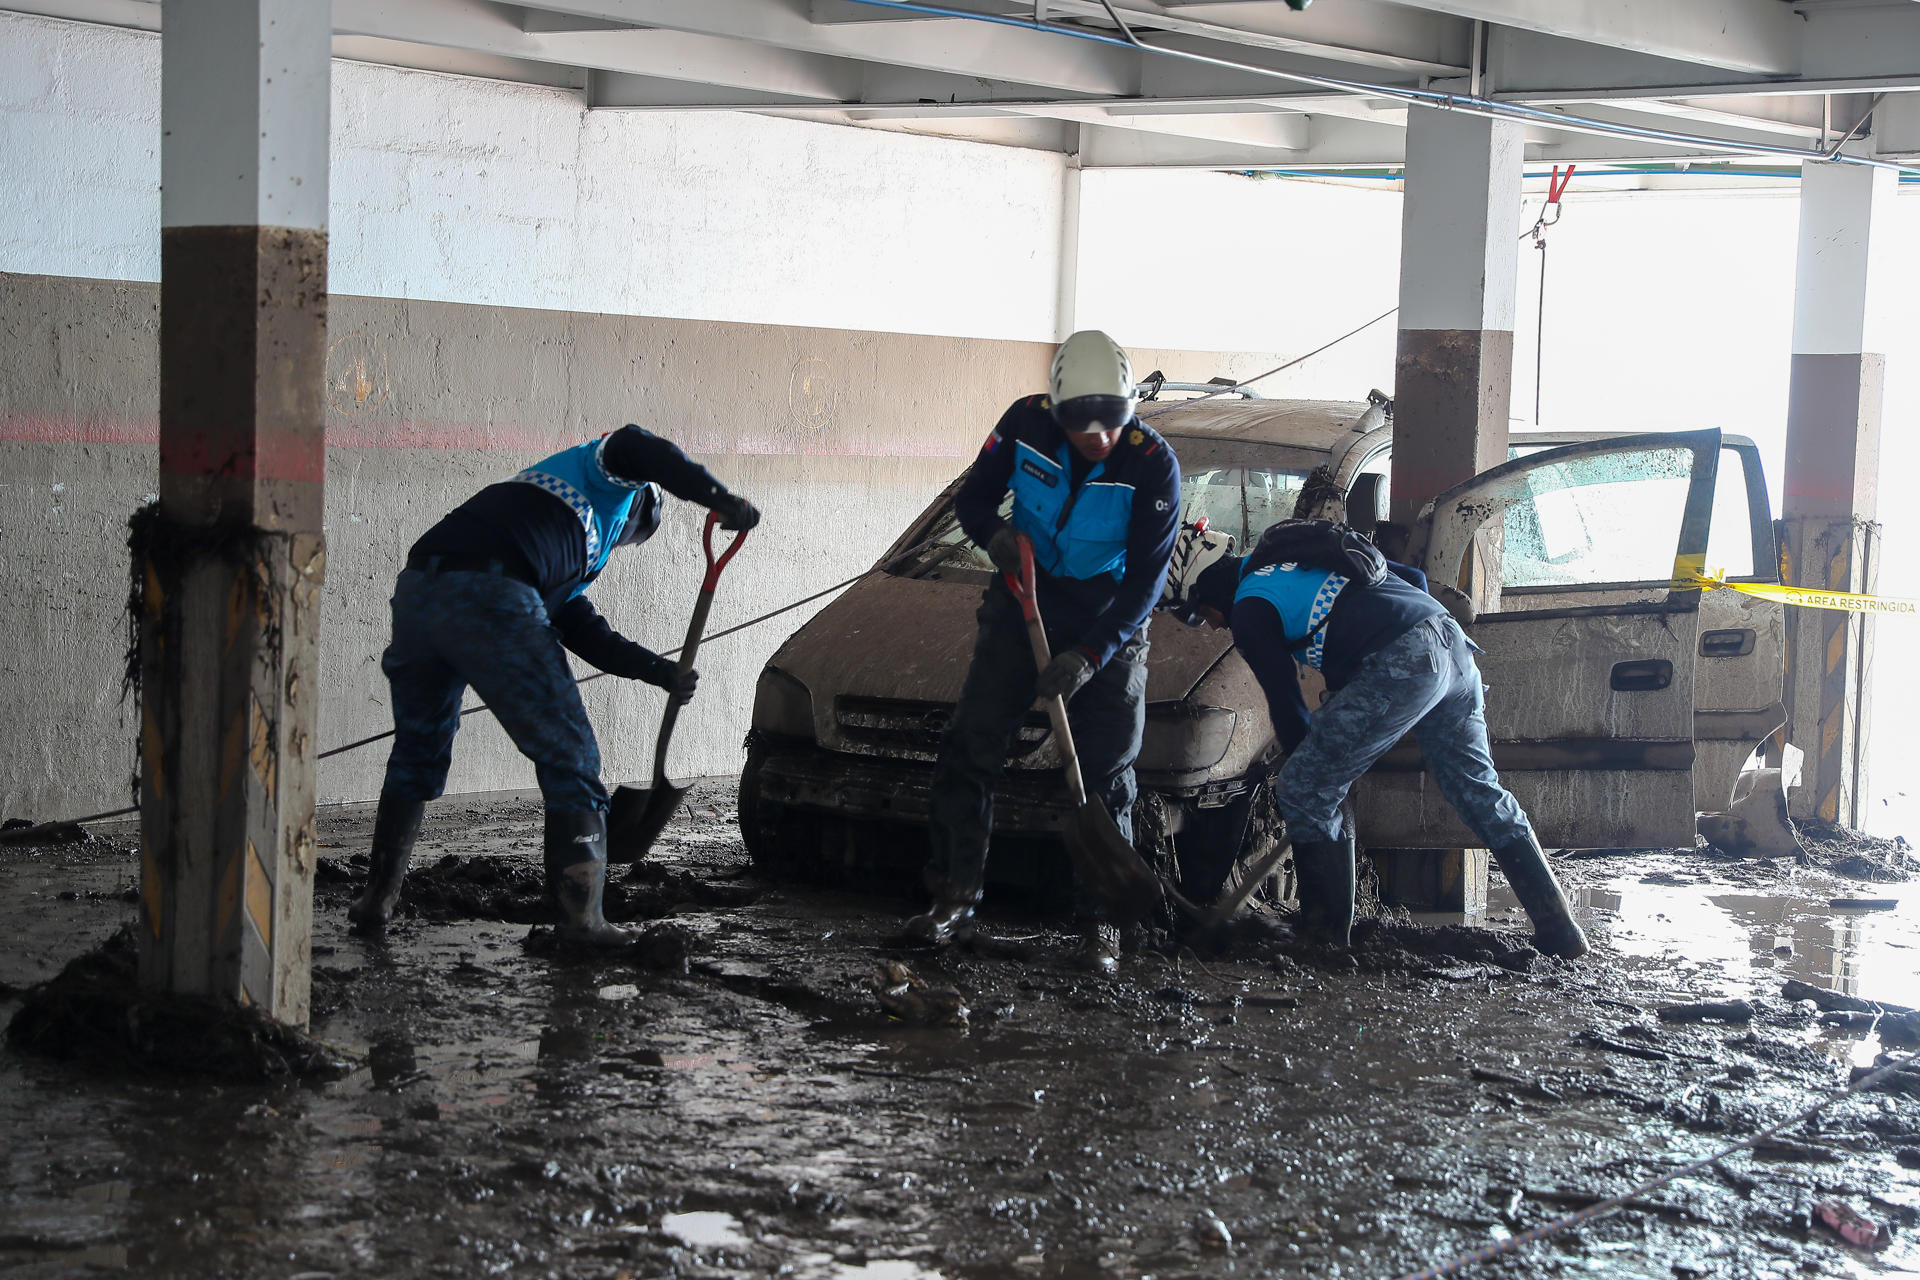 Obreros ecuatorianos ayudan este miércoles con la limpieza tras el aluvión ocurrido el martes, en el barrio La Gasca, en Quito (Ecuador). EFE/ José Jácome